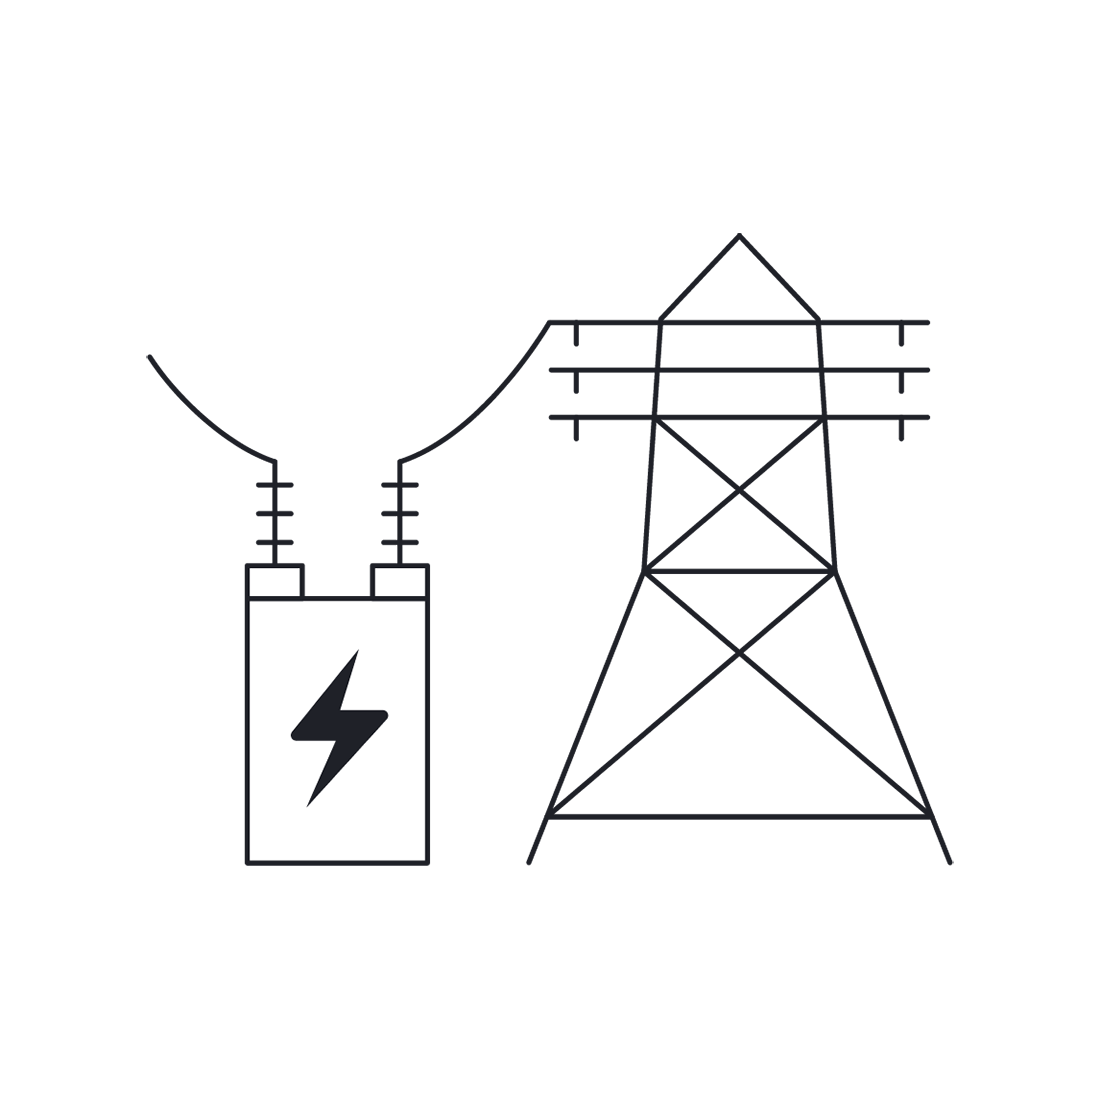 70 K Megawatt on site substation